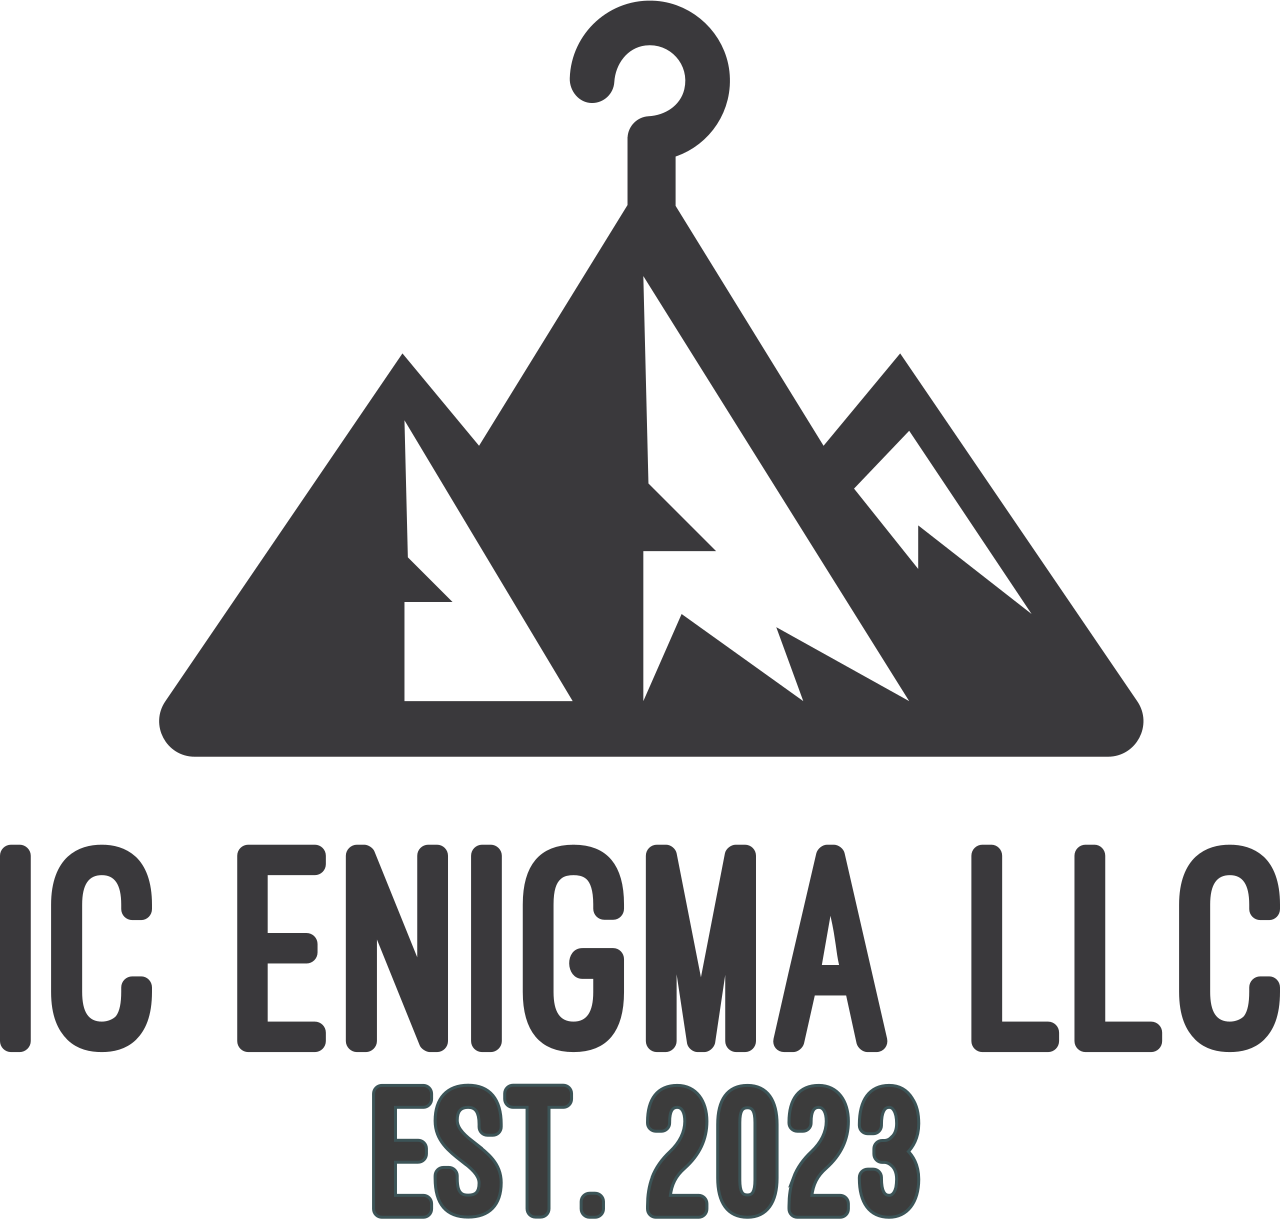 IC Enigma LLC's logo